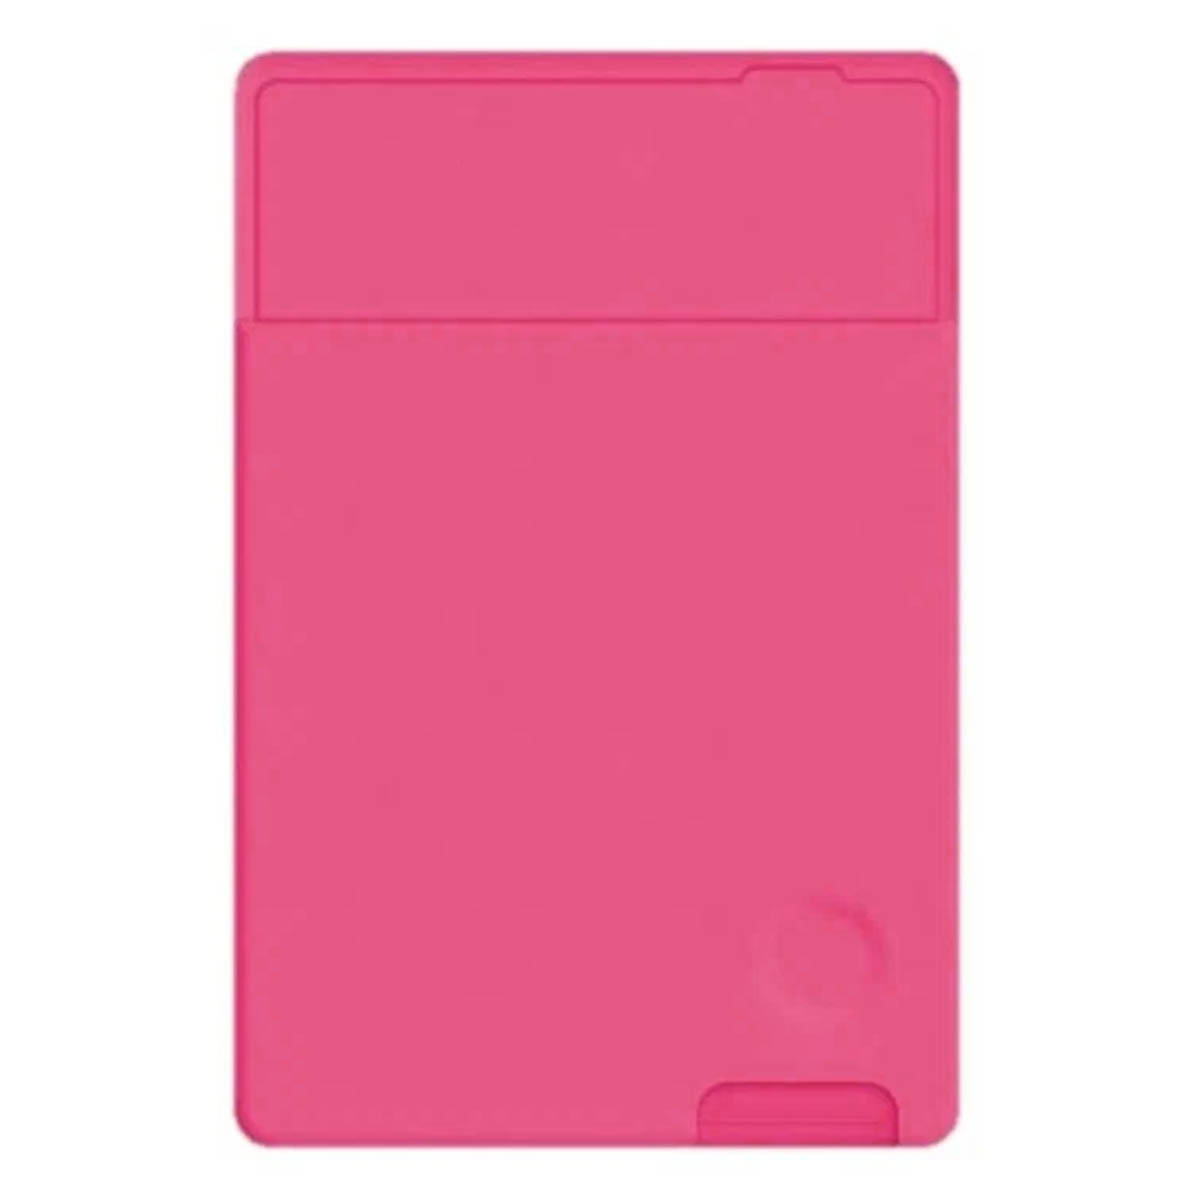 Чехол картхолдер с клеящейся оборотной стороной на смартфон для банковских карт, силикон, цвет фуксия